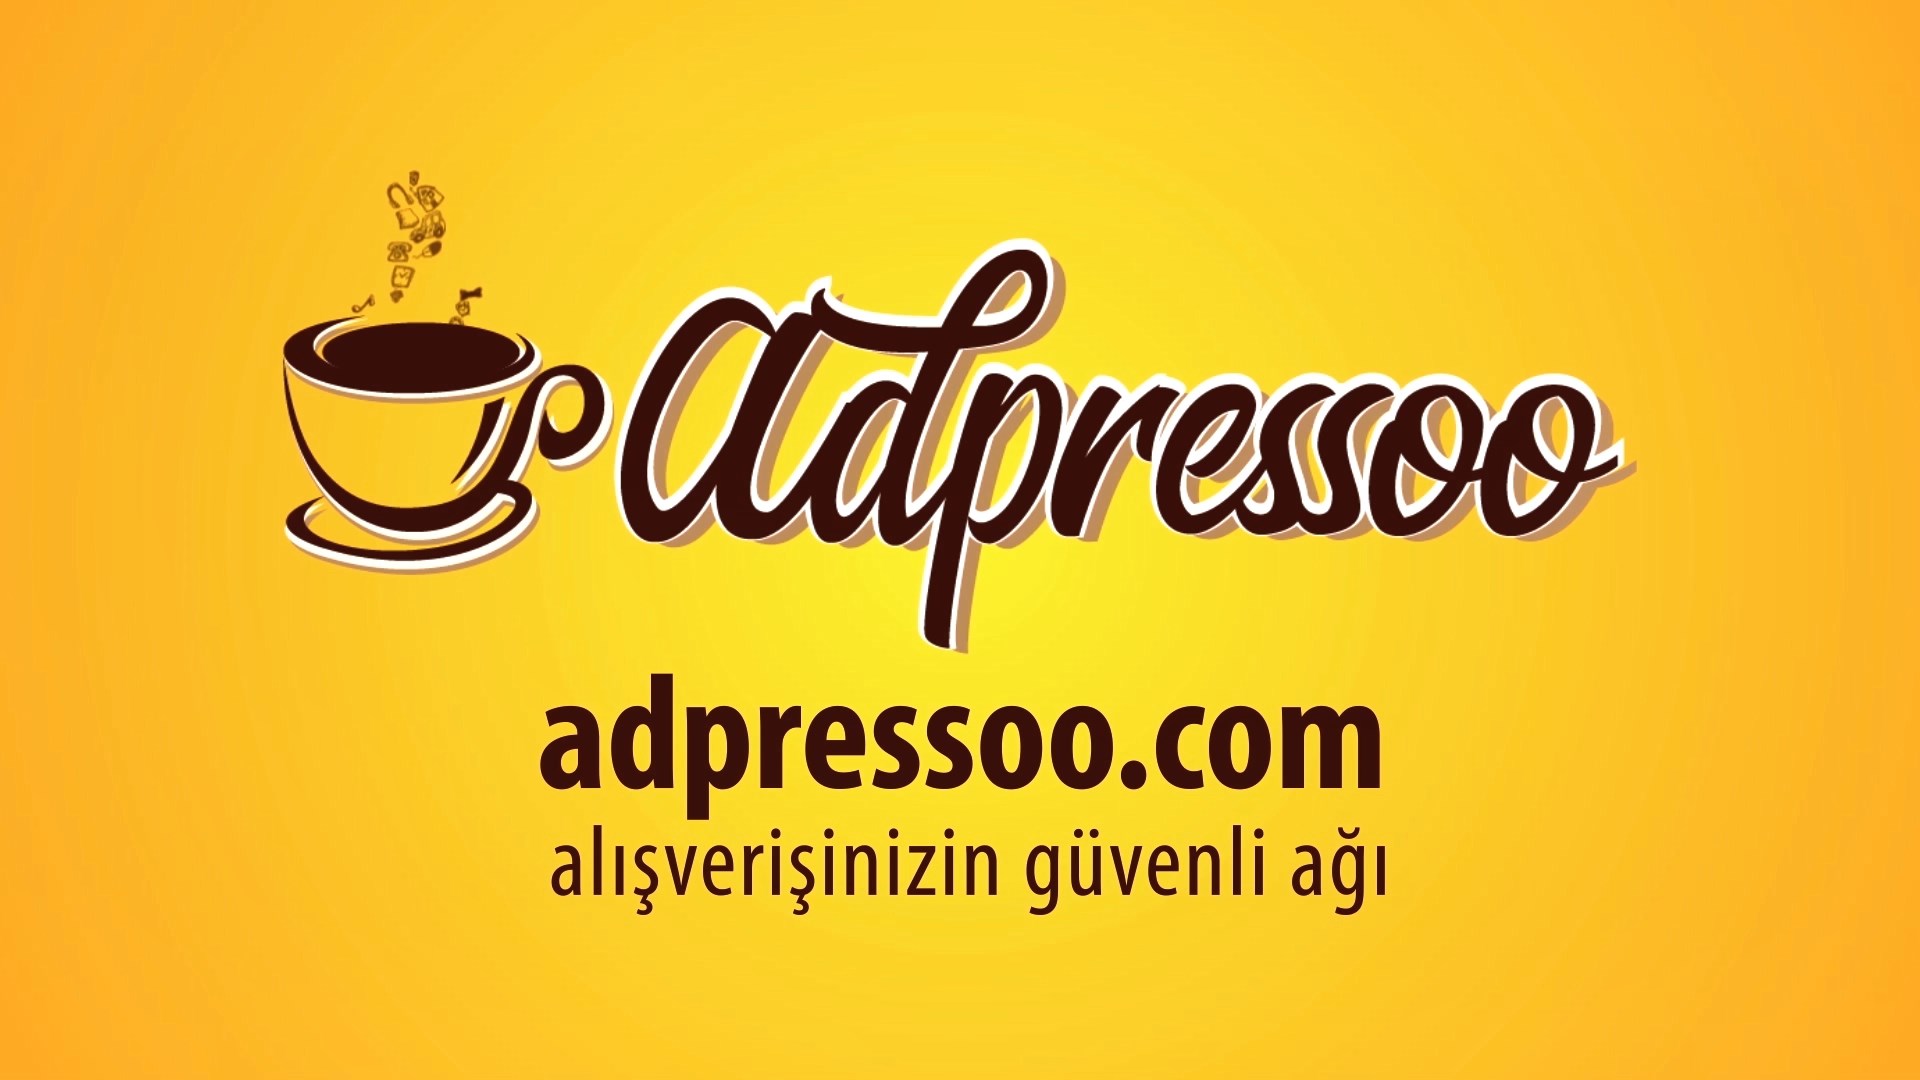 aspressoo.com 9 - ADPRESSOO TANITIM ANİMSYON FİLMİ